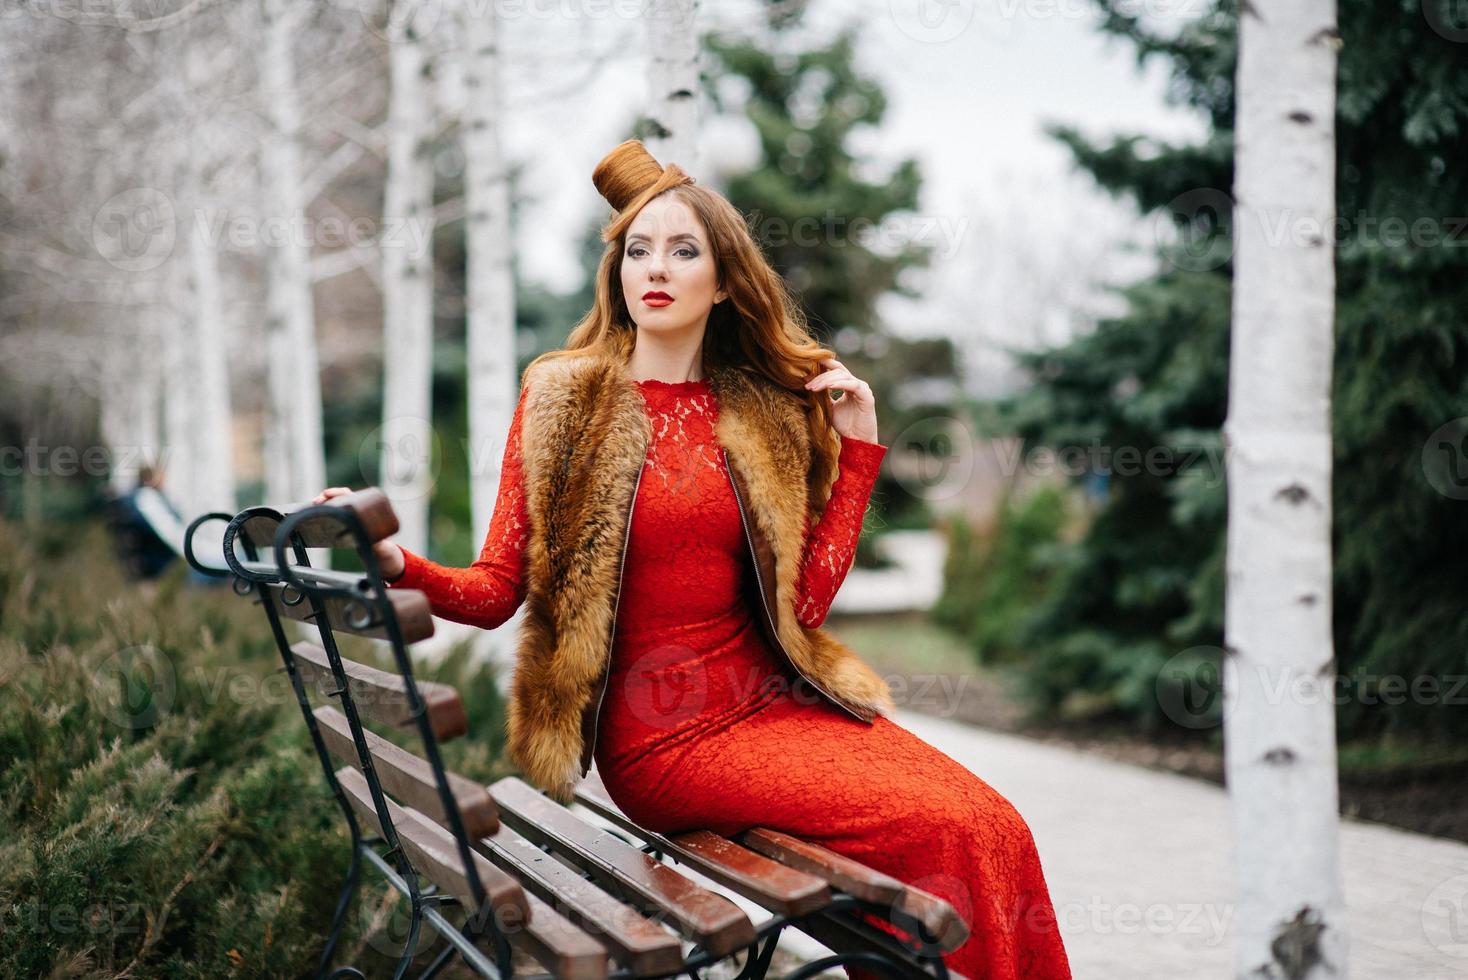 Chica joven con el pelo rojo con un vestido rojo brillante en un banco en un parque vacío foto